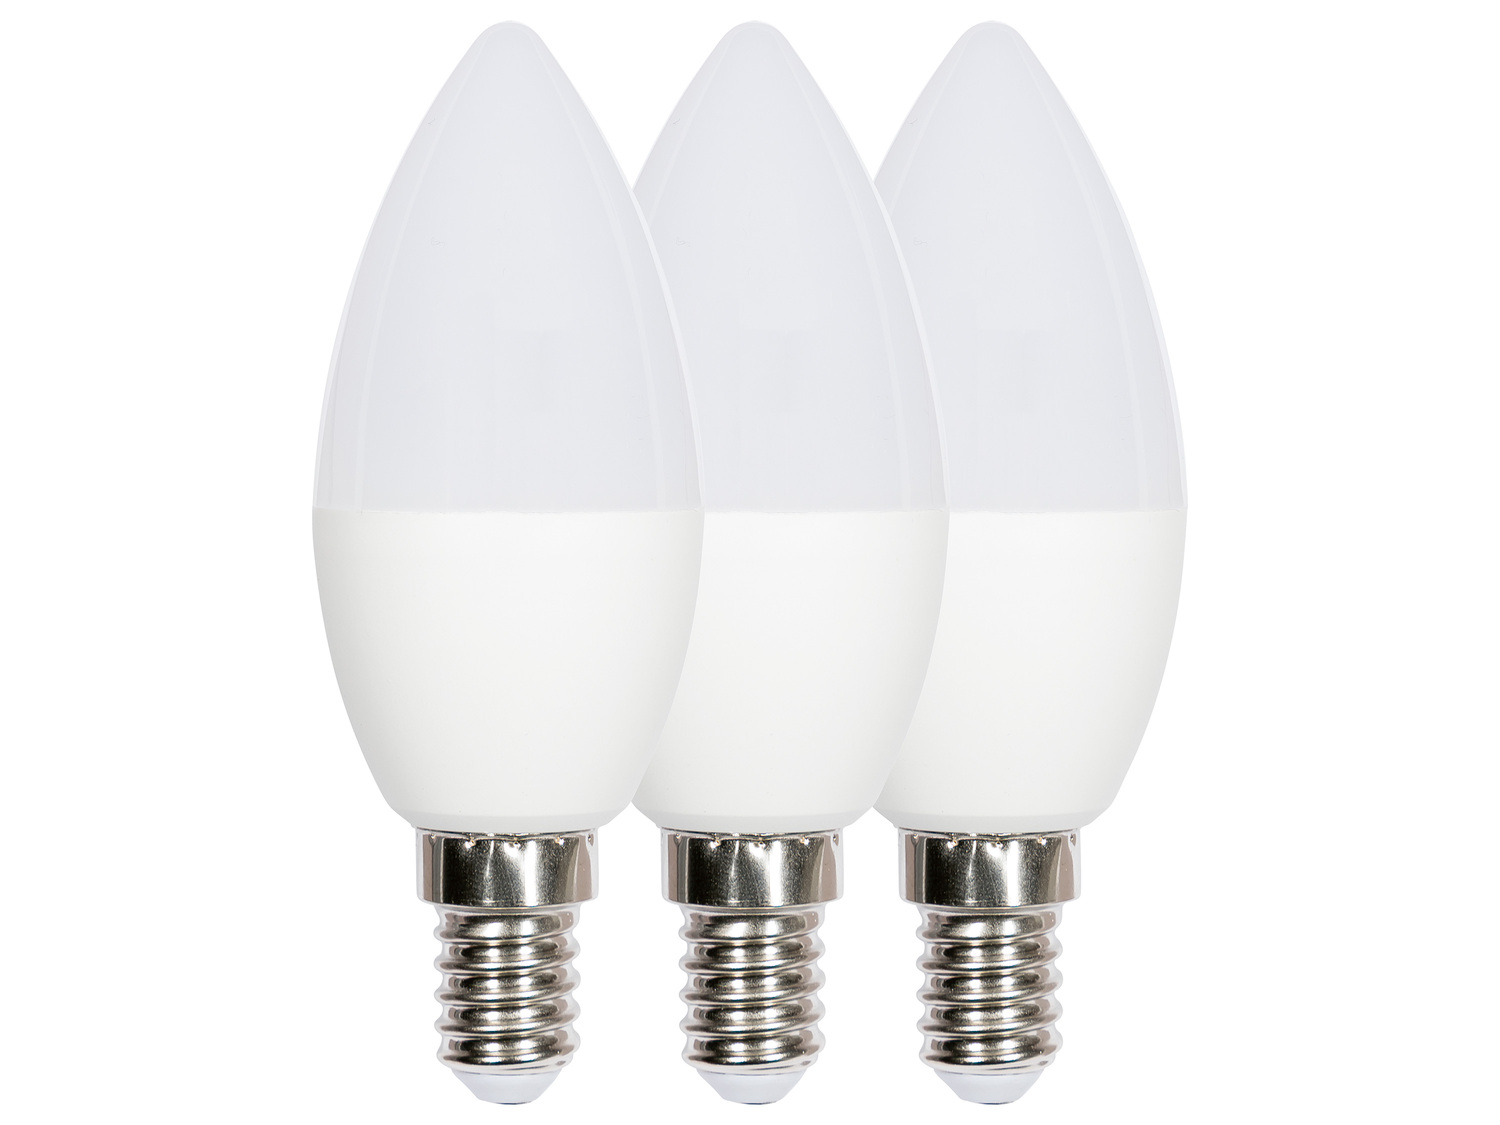 Ampoules LED , le prix 2.99 € 
Au choix : 
- Lot de 2 : E27, Light 9,5 W (équivalent ...